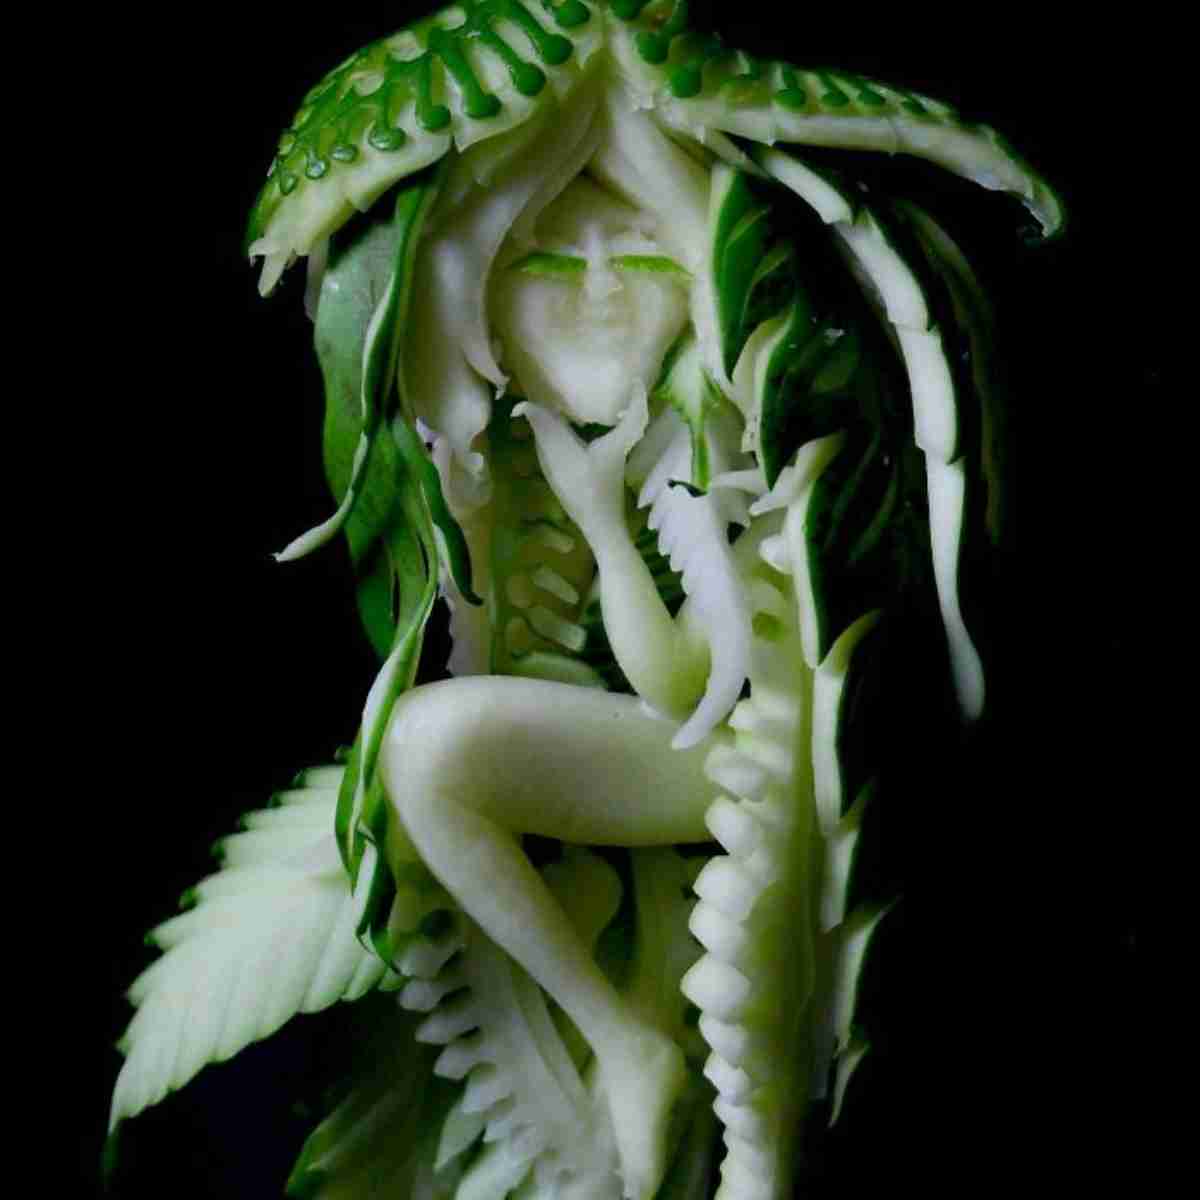 artista cria esculturas de frutas e legumes como você nunca viu